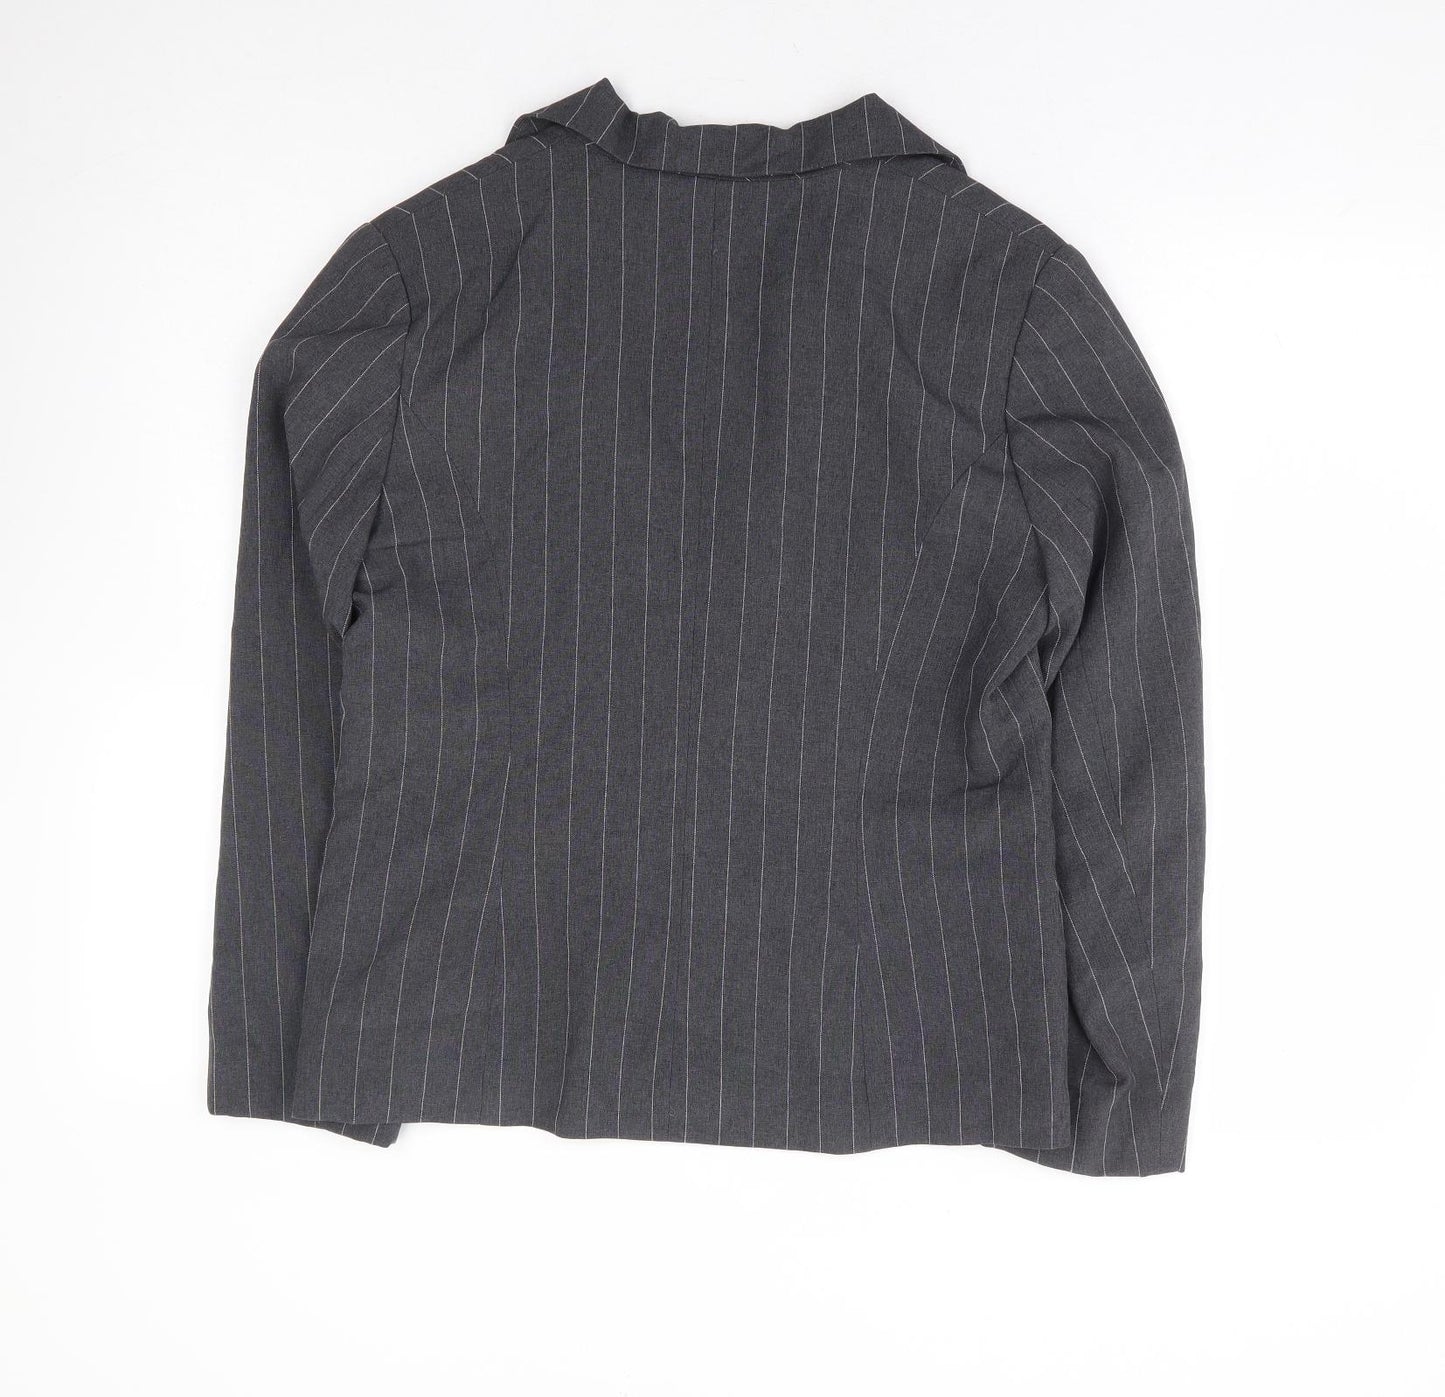 Basix Womens Grey Striped Polyester Jacket Blazer Size 12